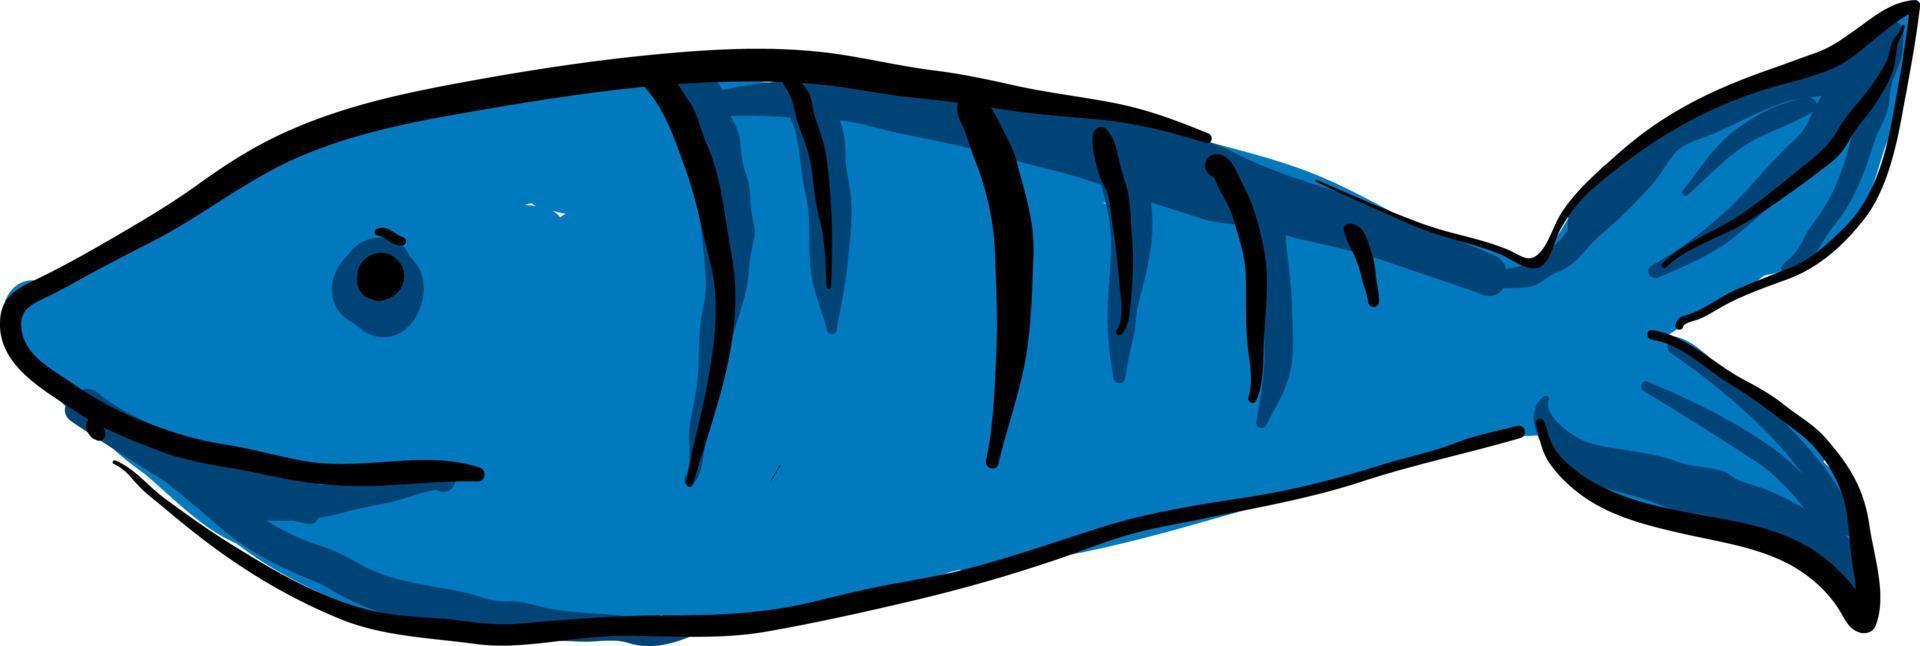 poisson bleu, illustration, vecteur sur fond blanc.